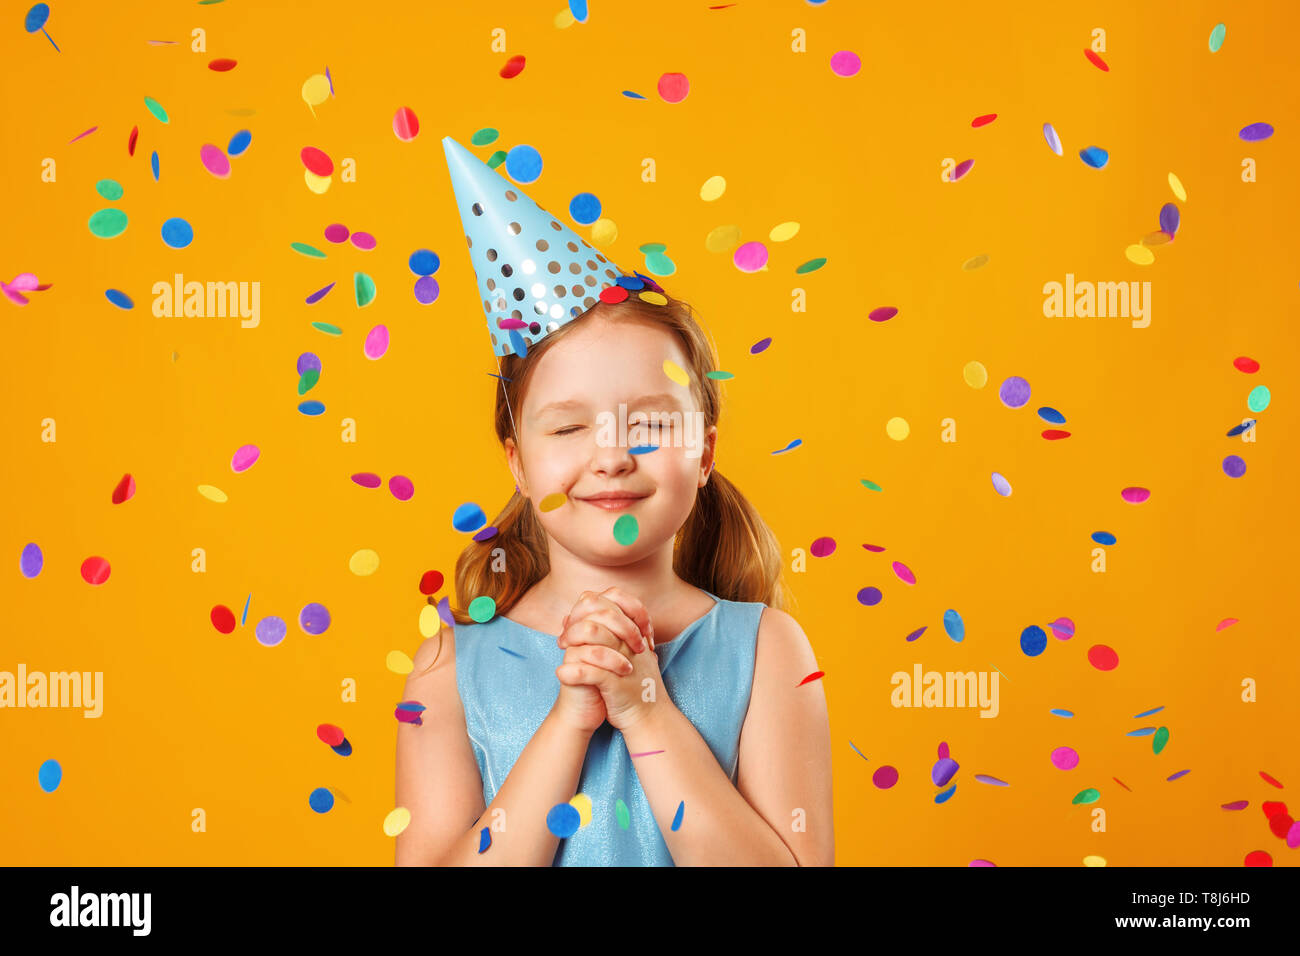 Cute little girl célèbre l'anniversaire. L'enfant ferma les yeux et fait un souhait dans la pluie de confettis. Closeup portrait sur fond jaune. Banque D'Images